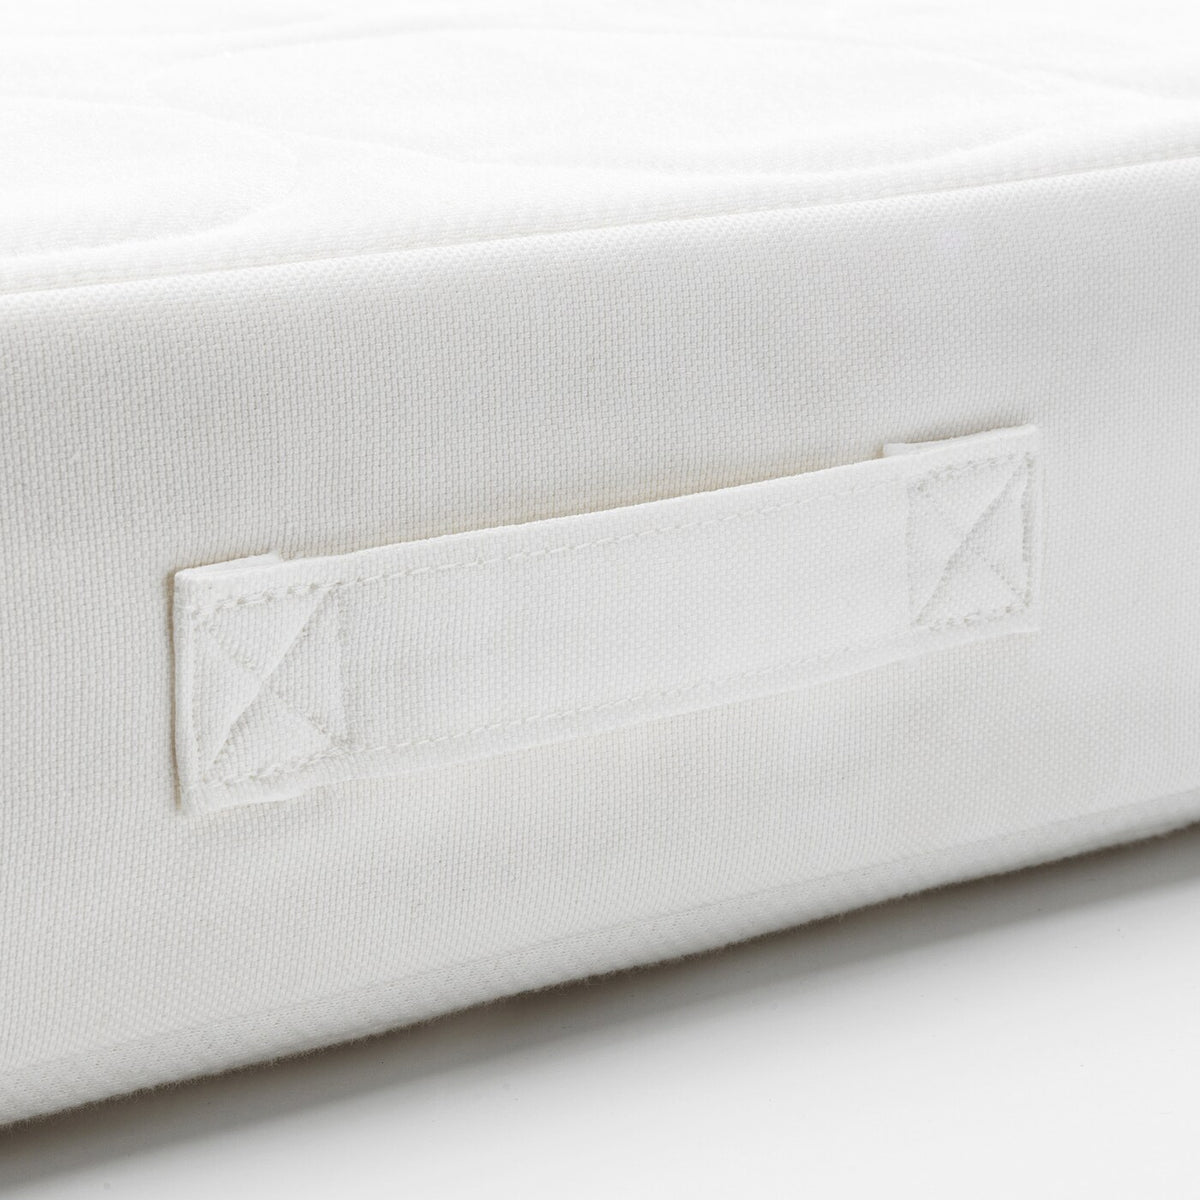 IKEA JATTETROTT sprung mattress for cot, 120x60x11 cm